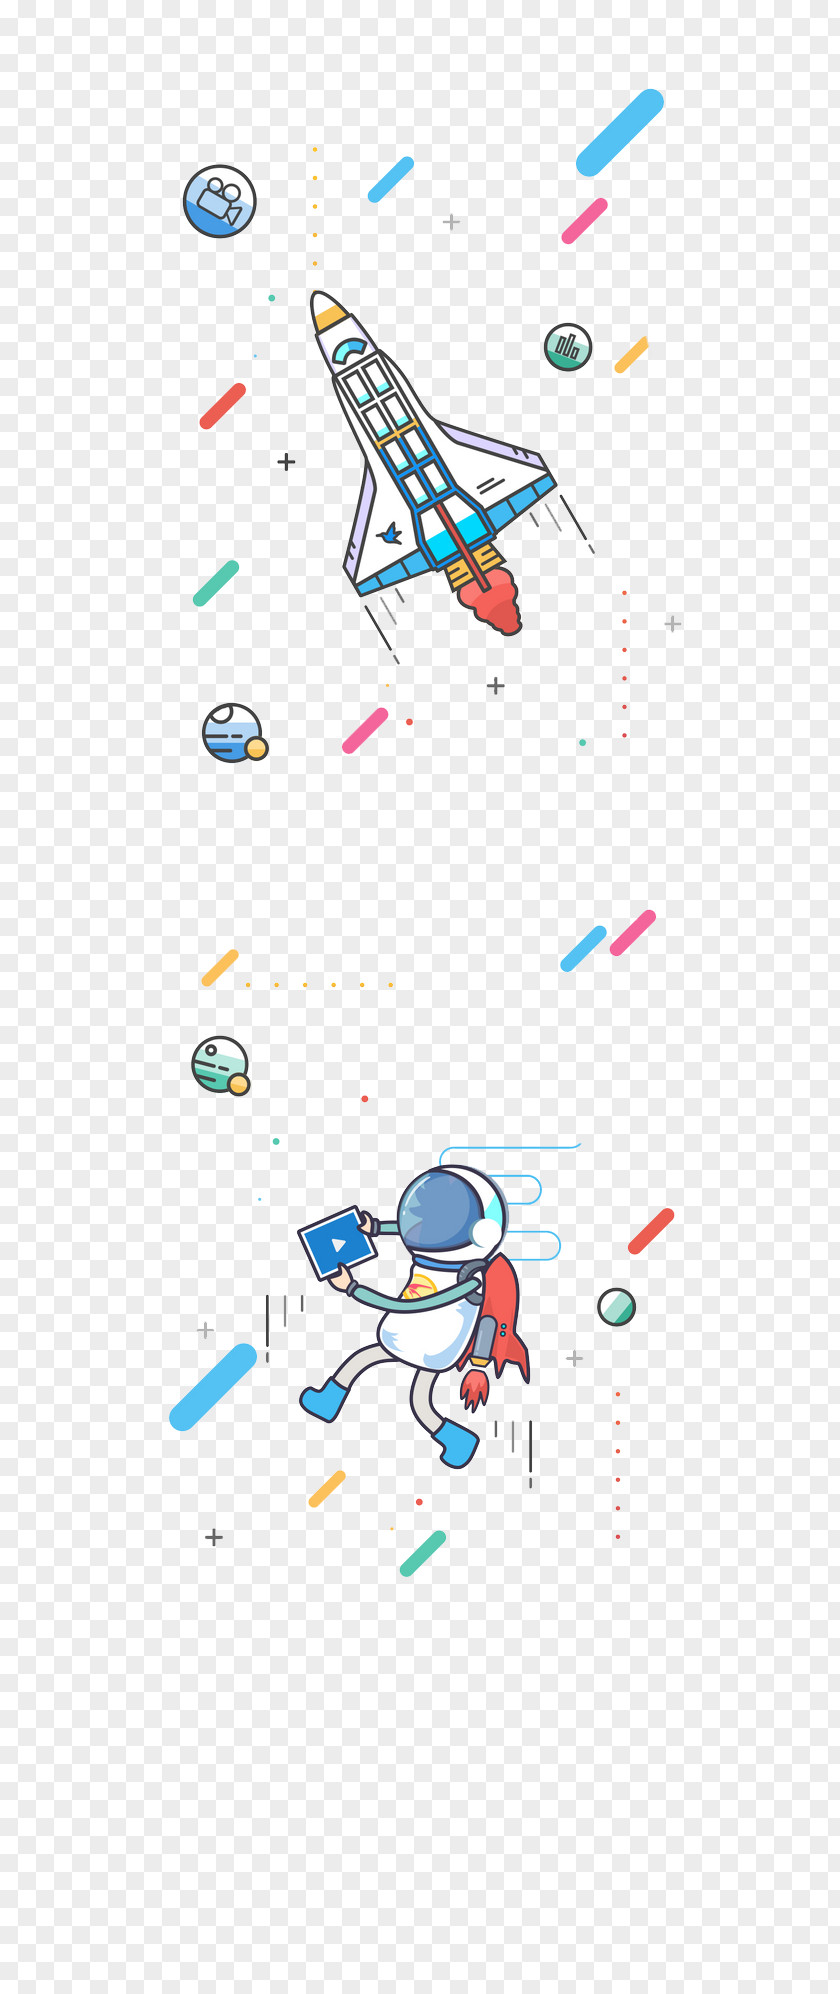 Rocket Cartoon Background Illustration PNG